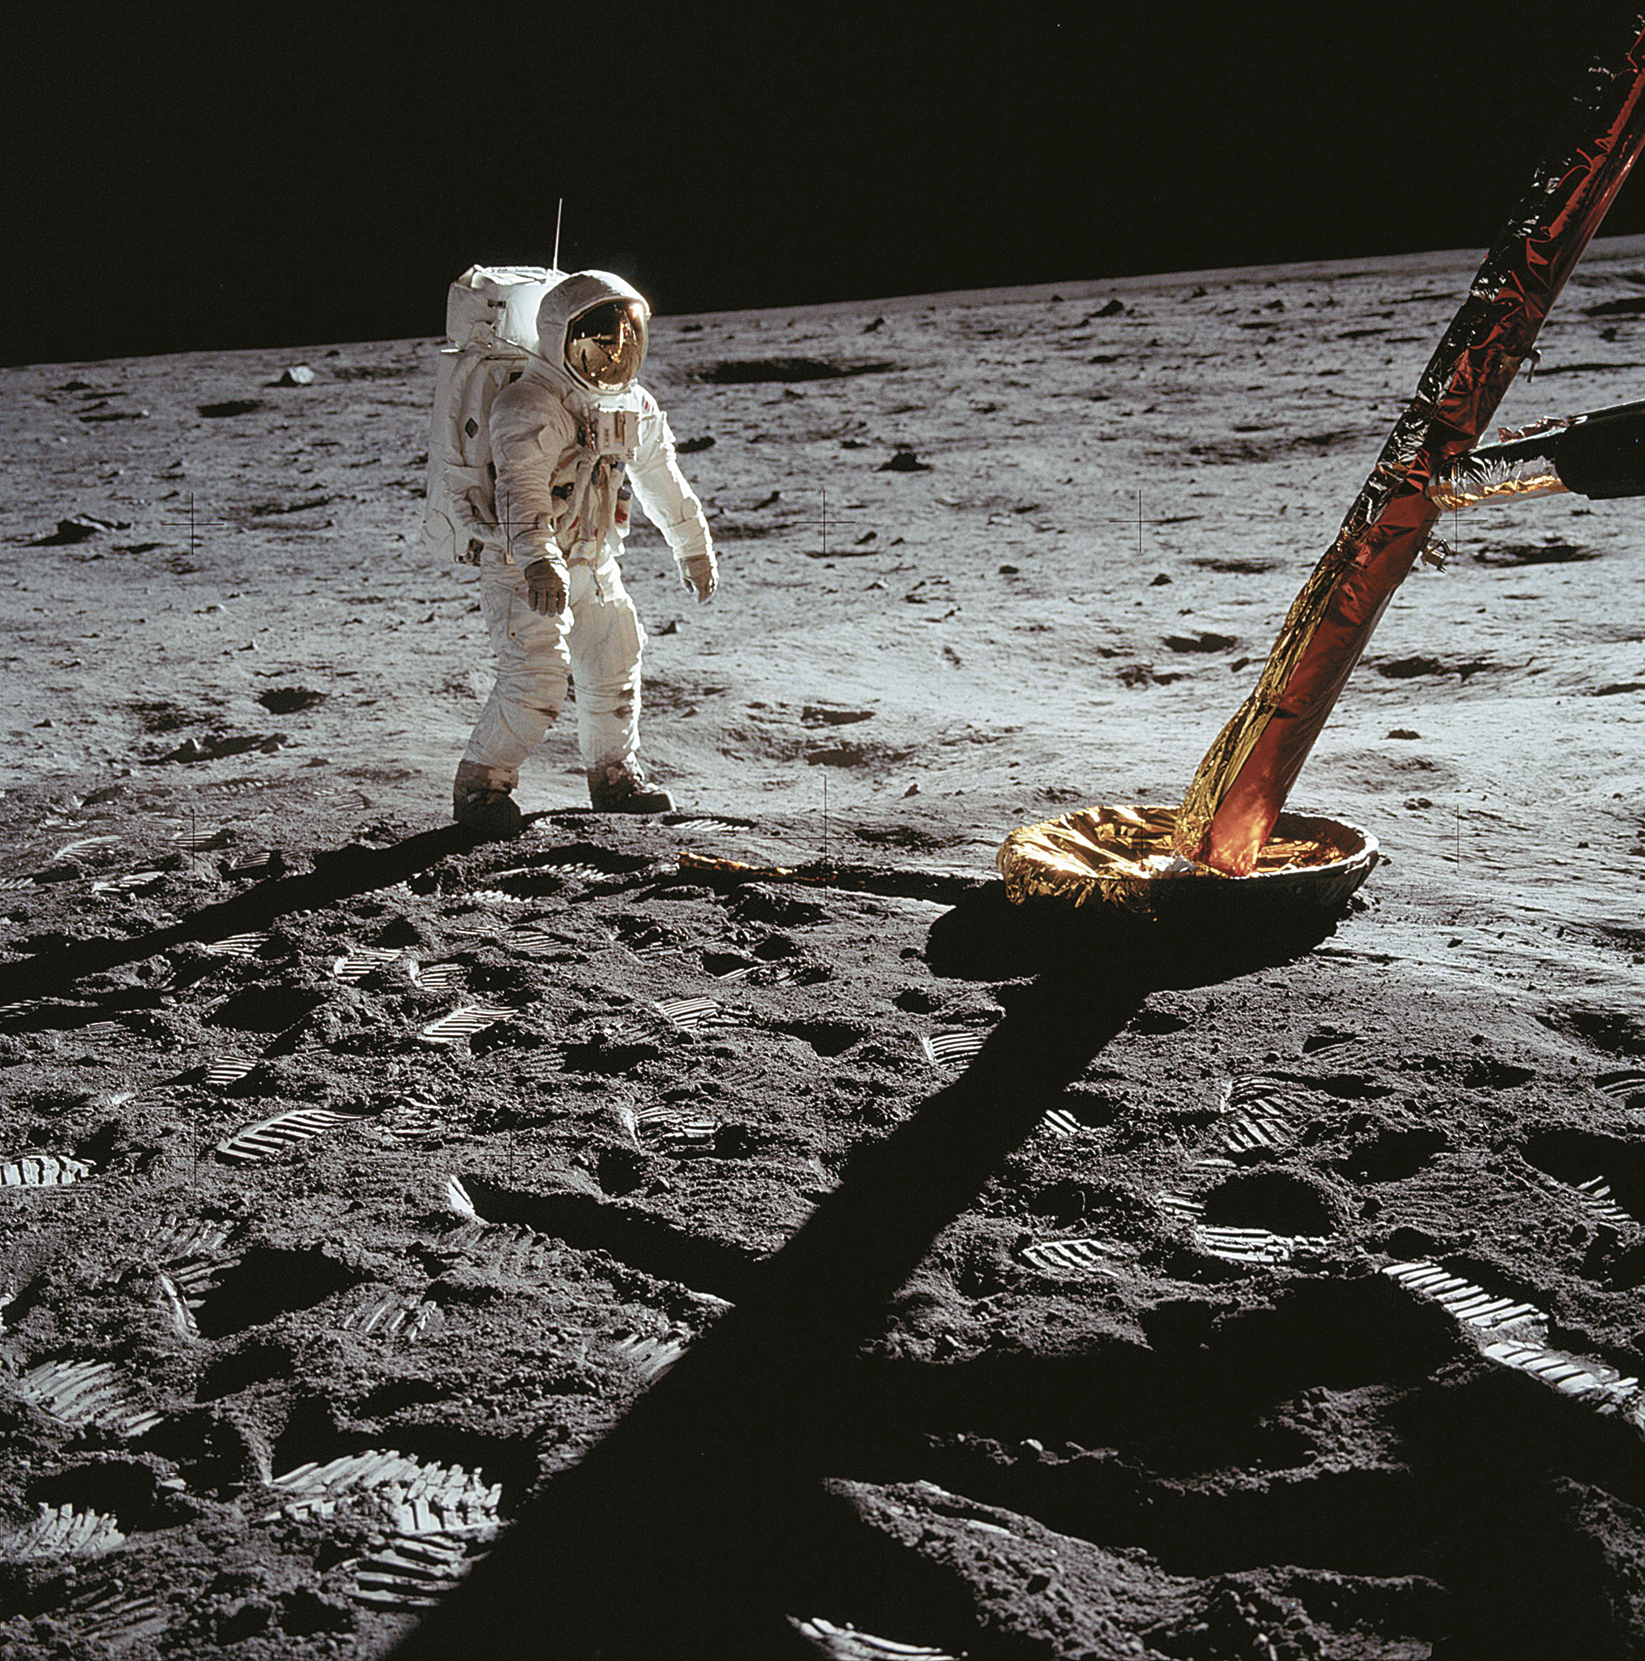 Fotografia. Uma pessoa usando roupas e capacete de astronauta caminha sobre o solo da Lua.